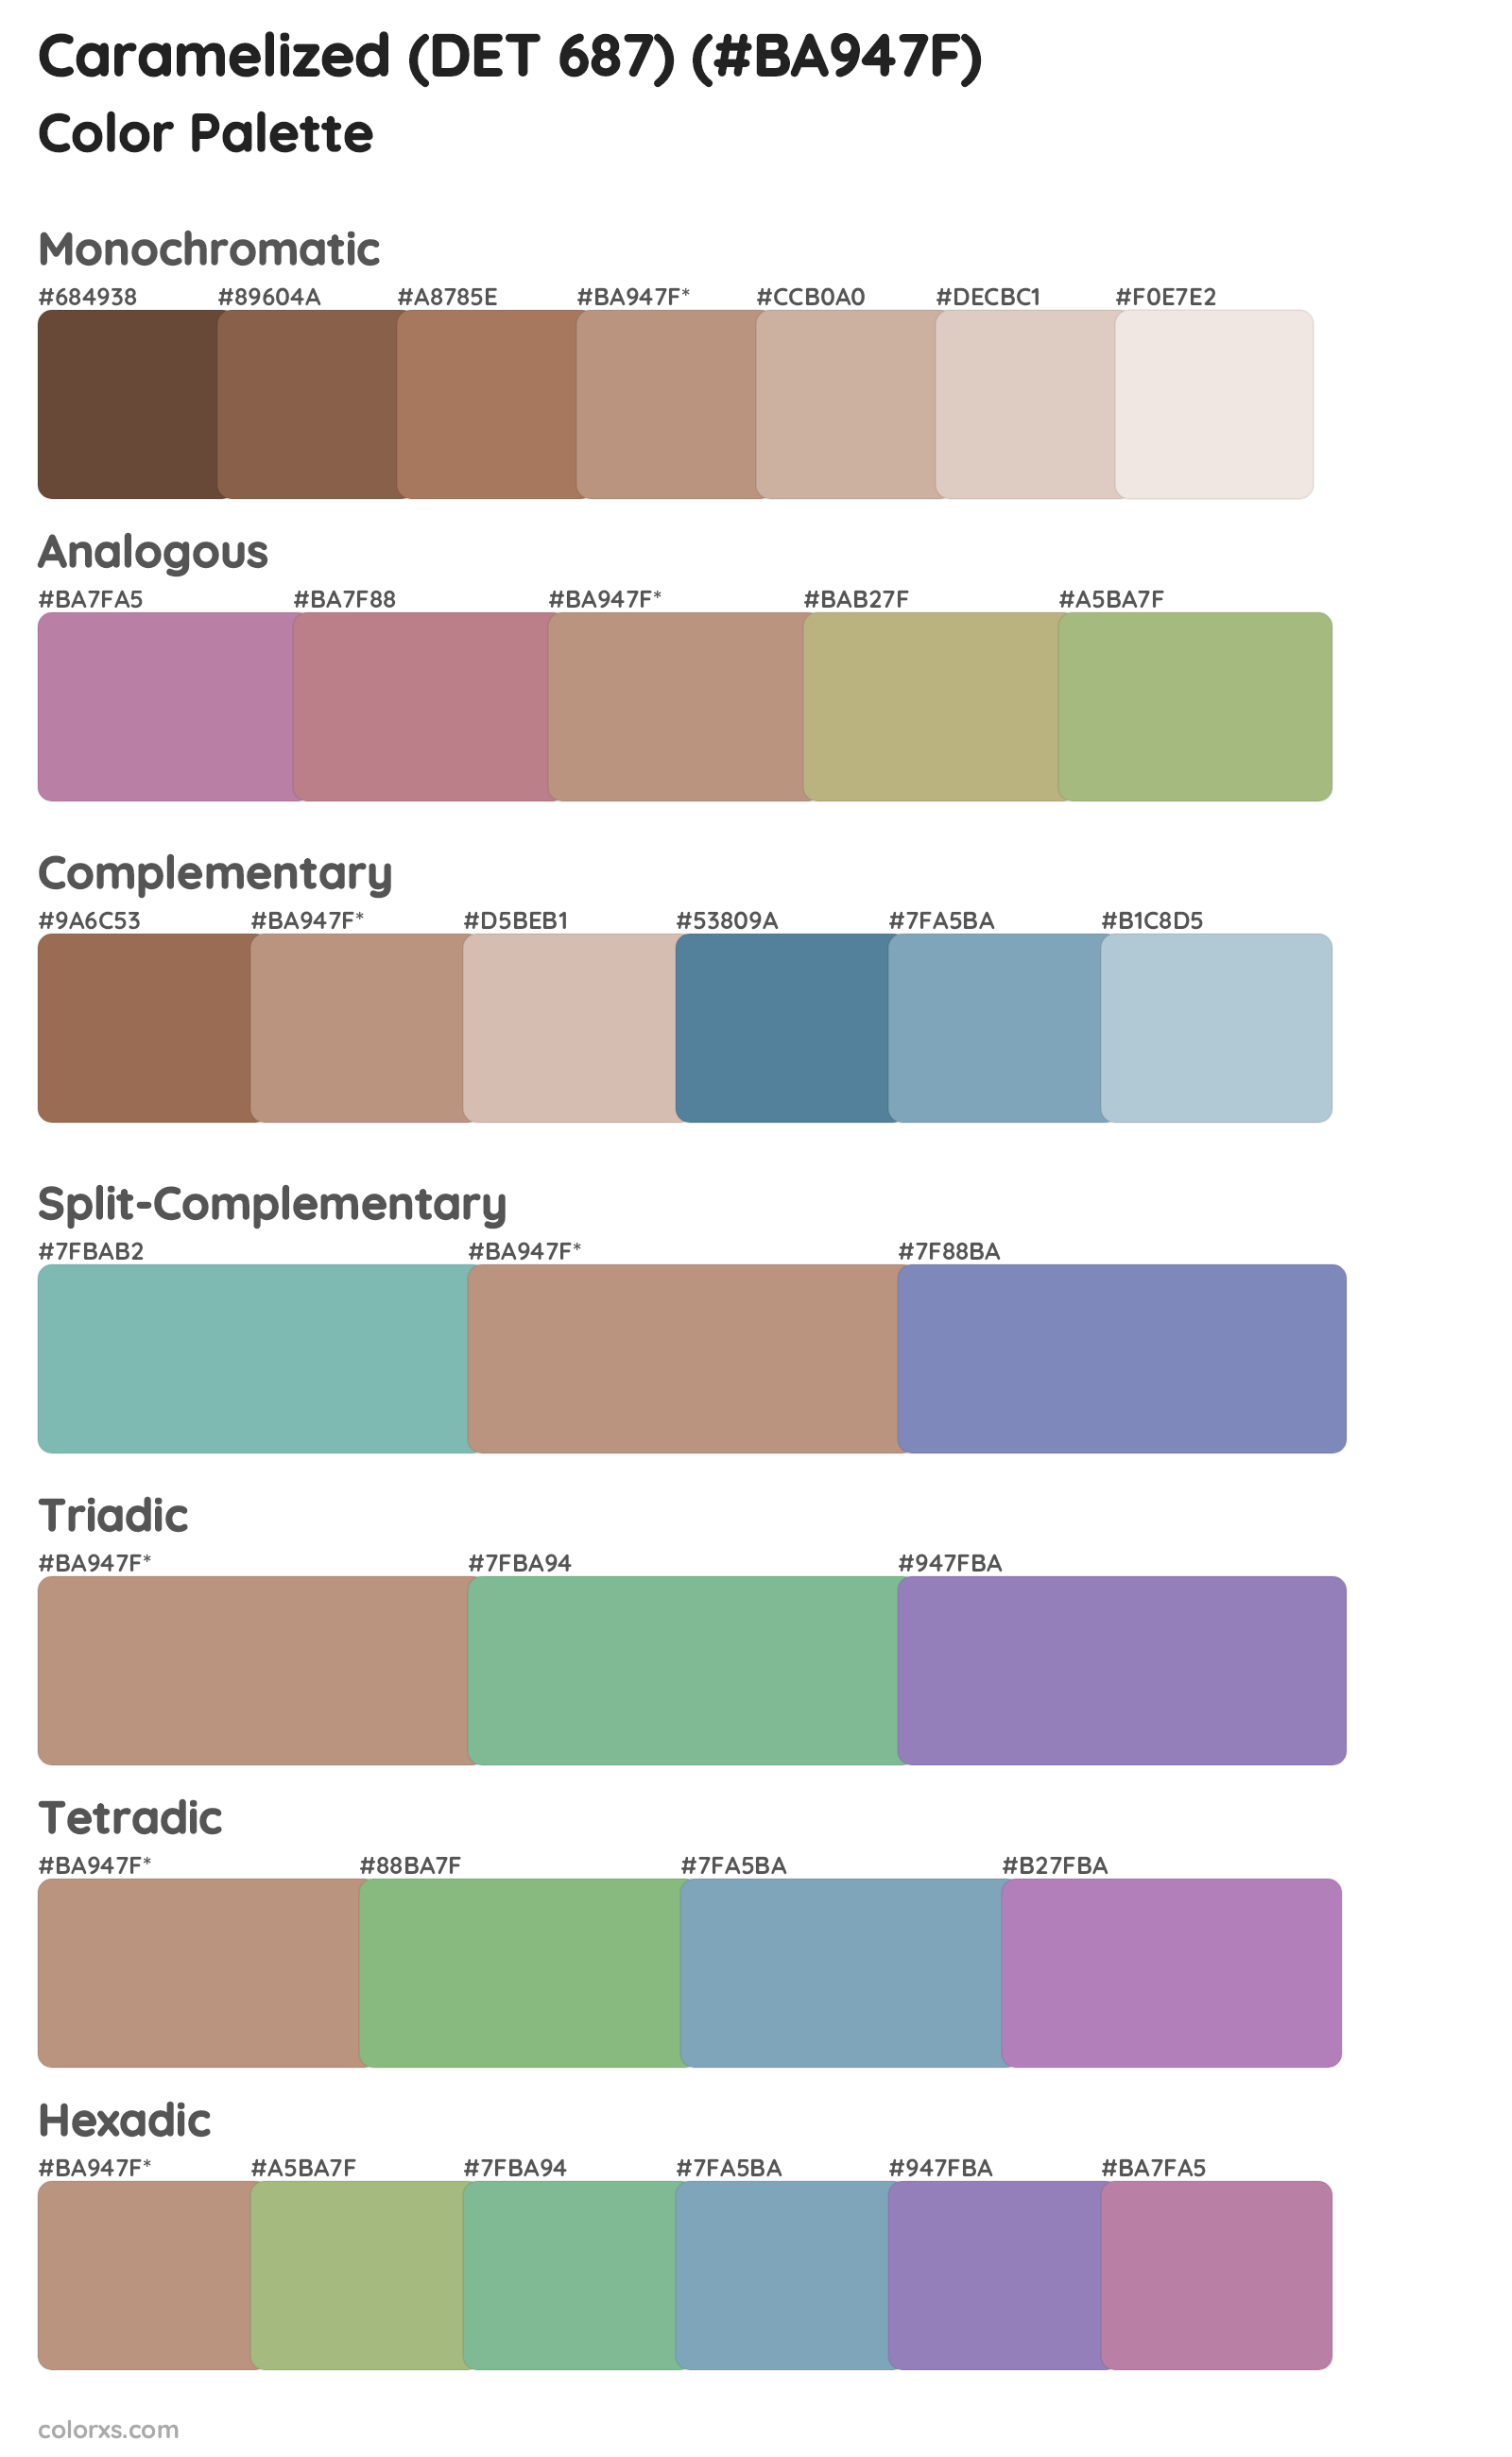 Caramelized (DET 687) Color Scheme Palettes